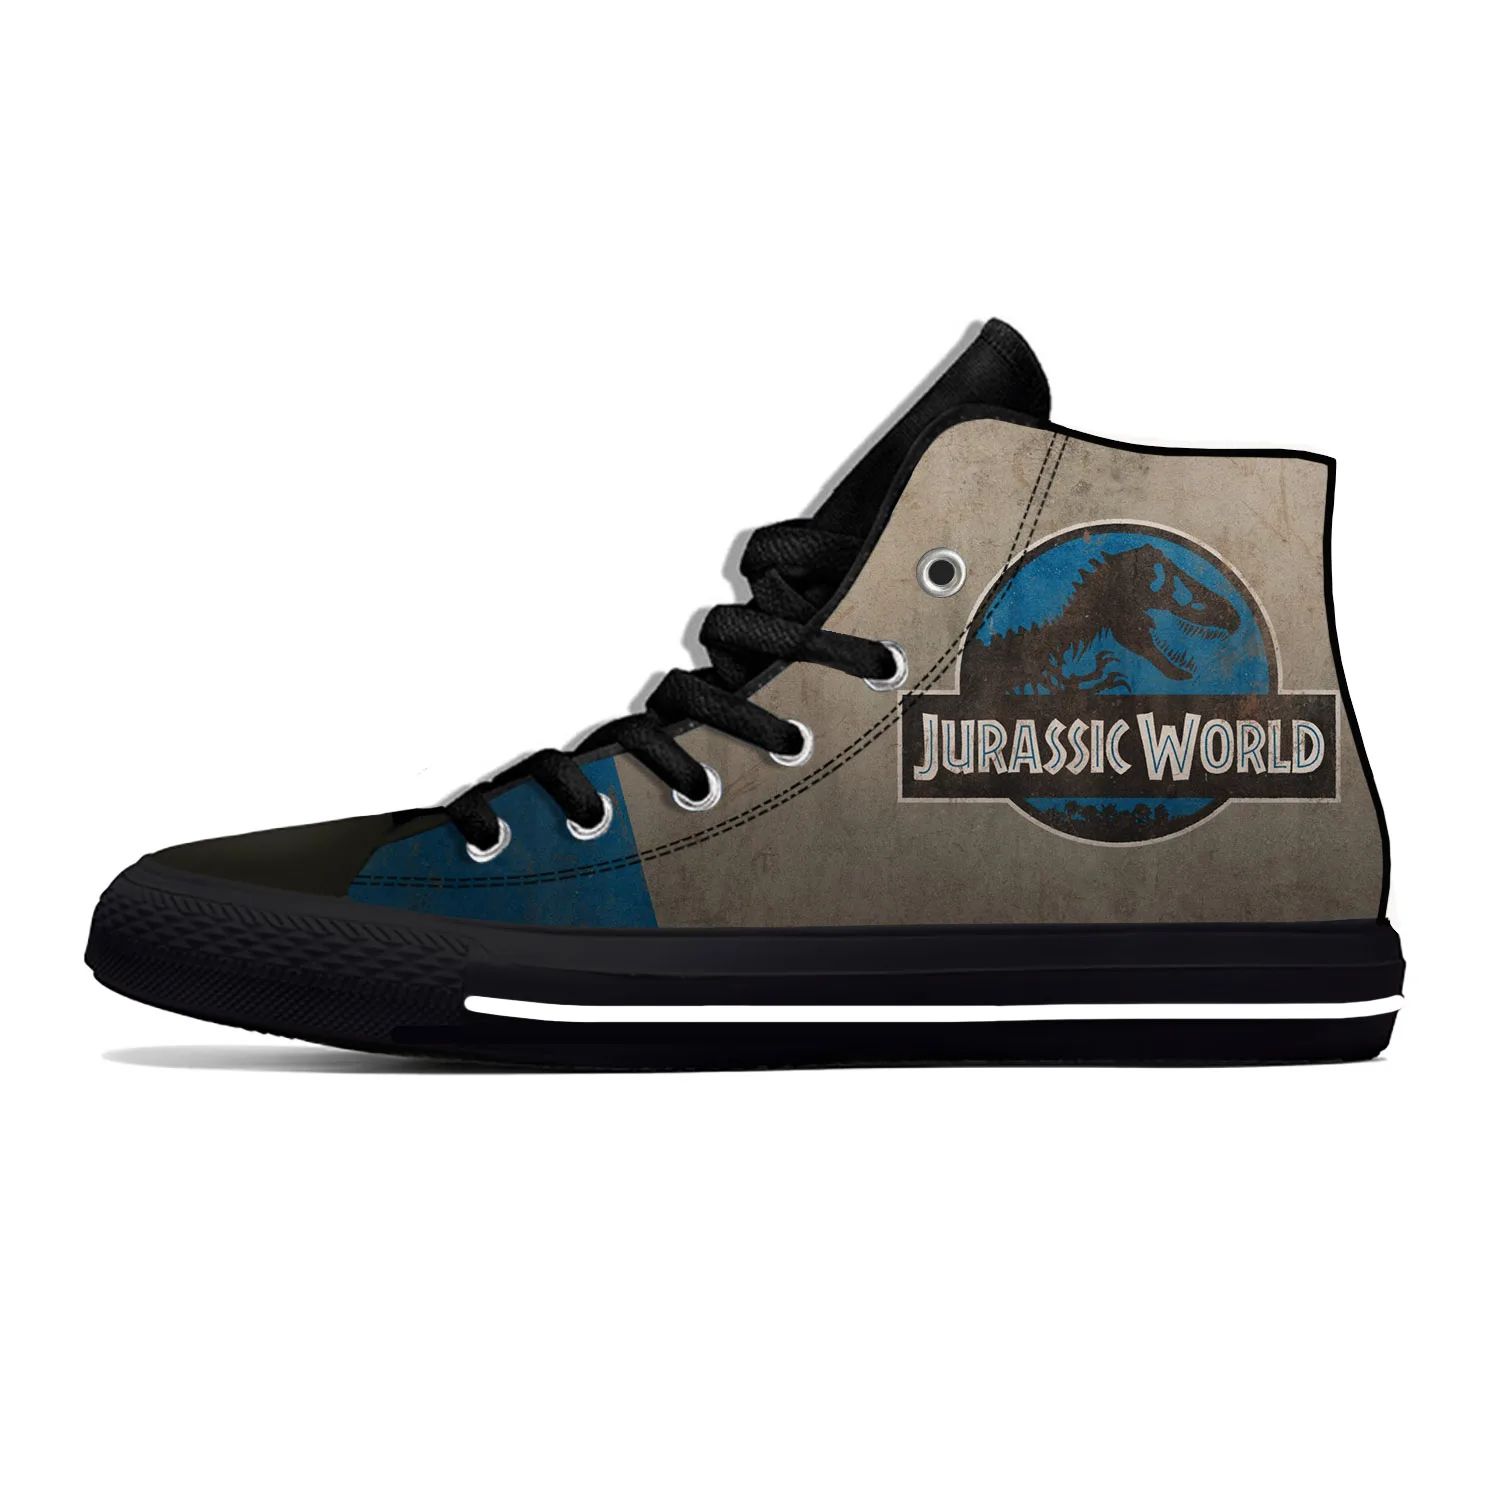 Color:Jurassic Park18Shoe Size:10